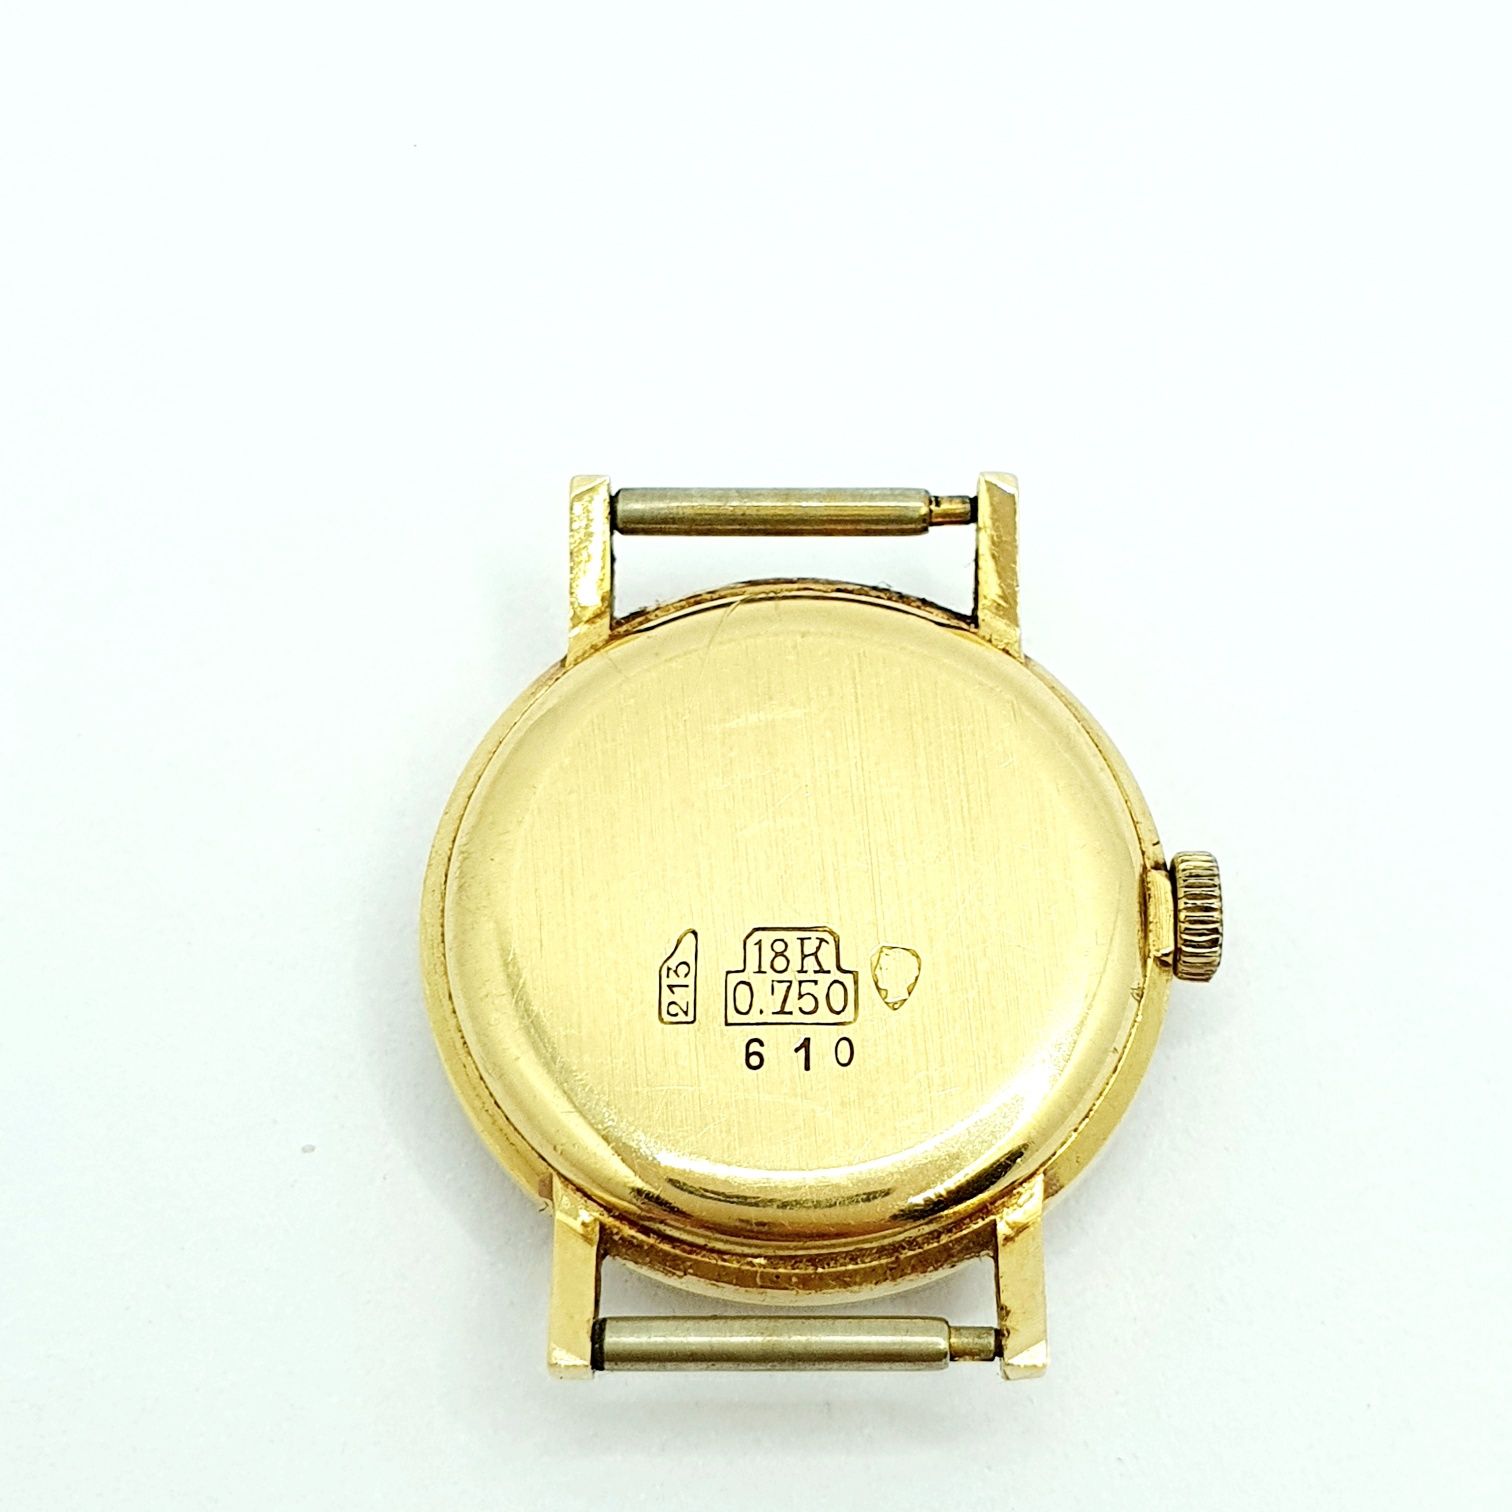 Zegarek damski Exacta złoty pr.750 17 jewels